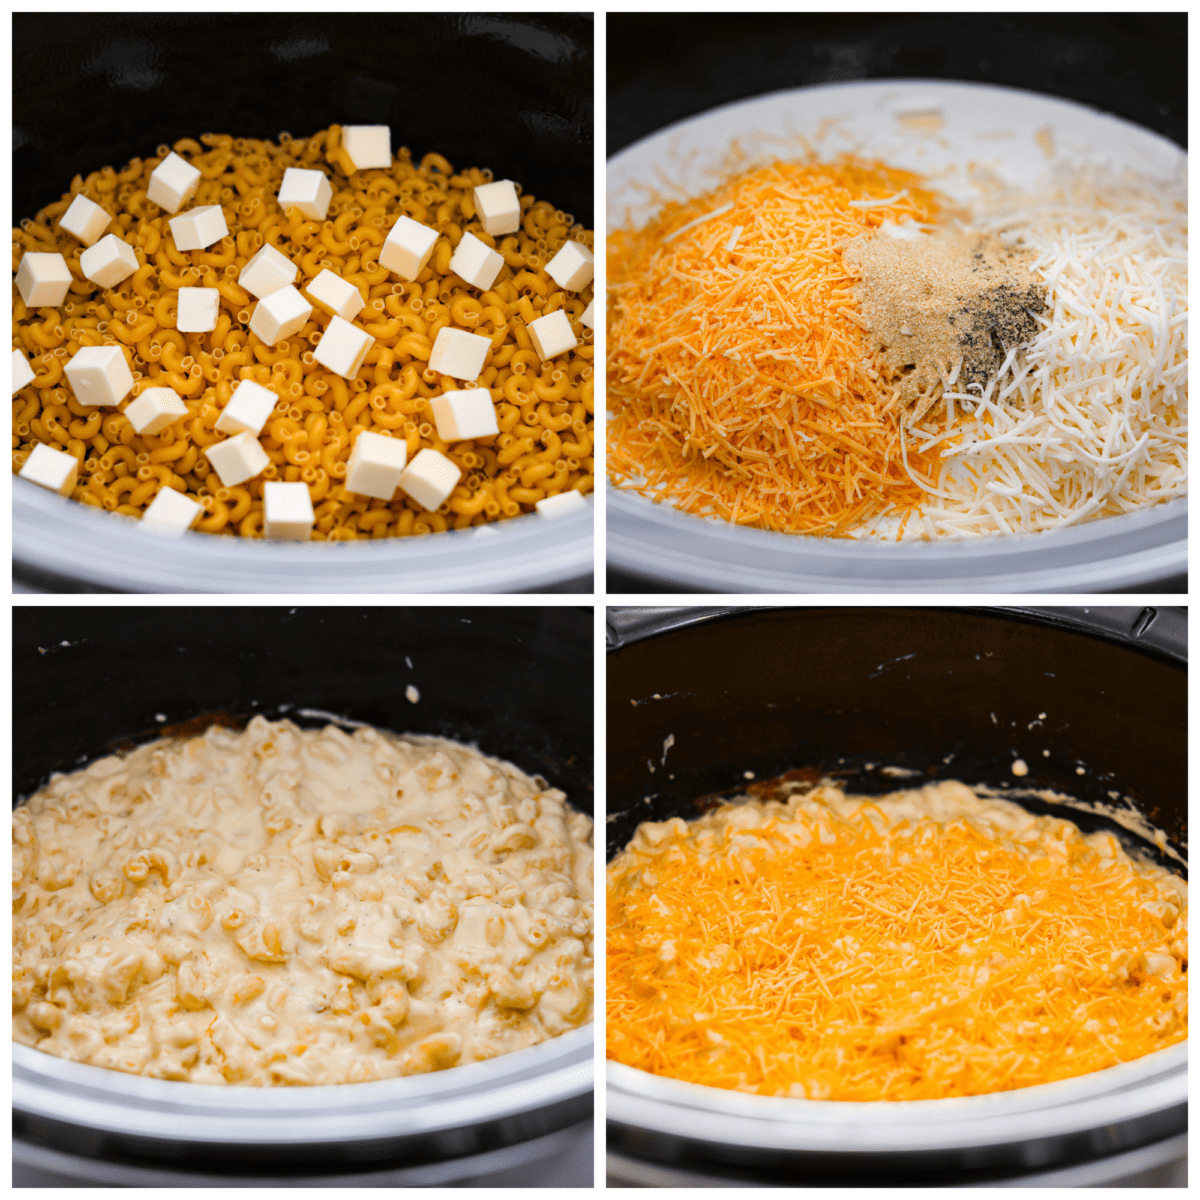 Kolaż składający się z 4 zdjęć przedstawiający składniki makaronu i sera dodawane do wolnowaru.